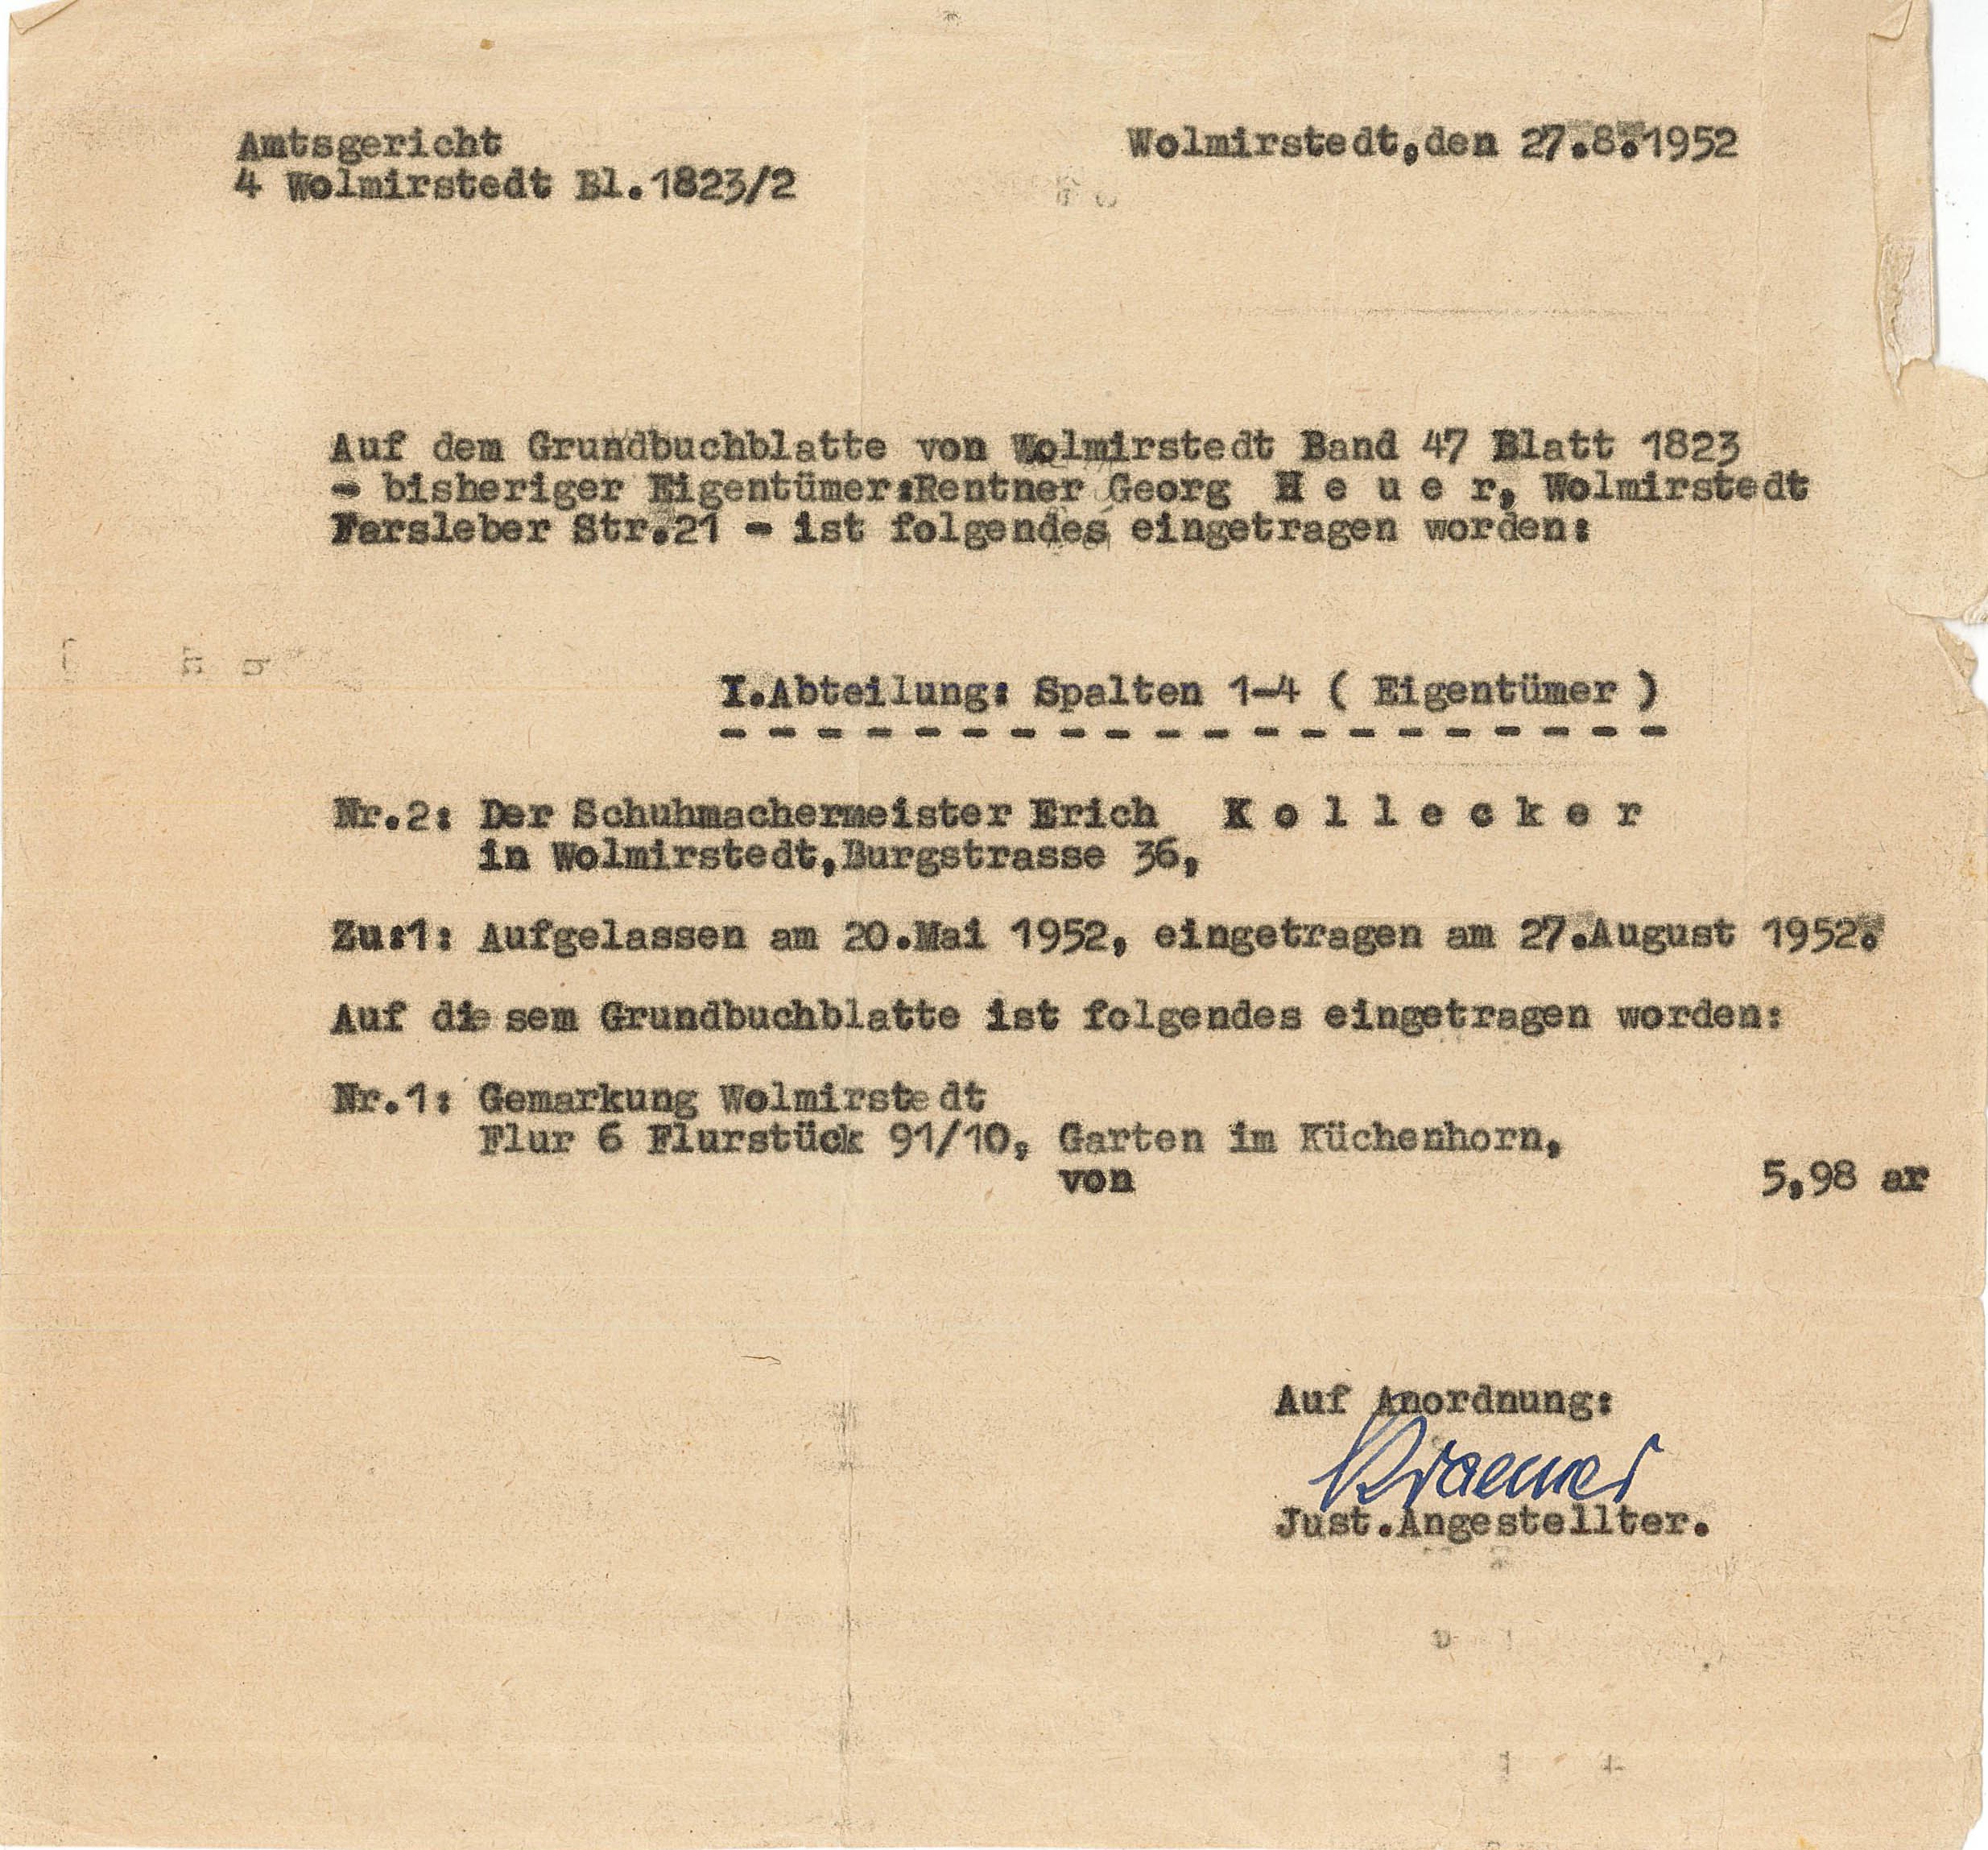 Grundbuchauszug für Erich Kollecker, 27. August 1952 (Museum Wolmirstedt RR-F)